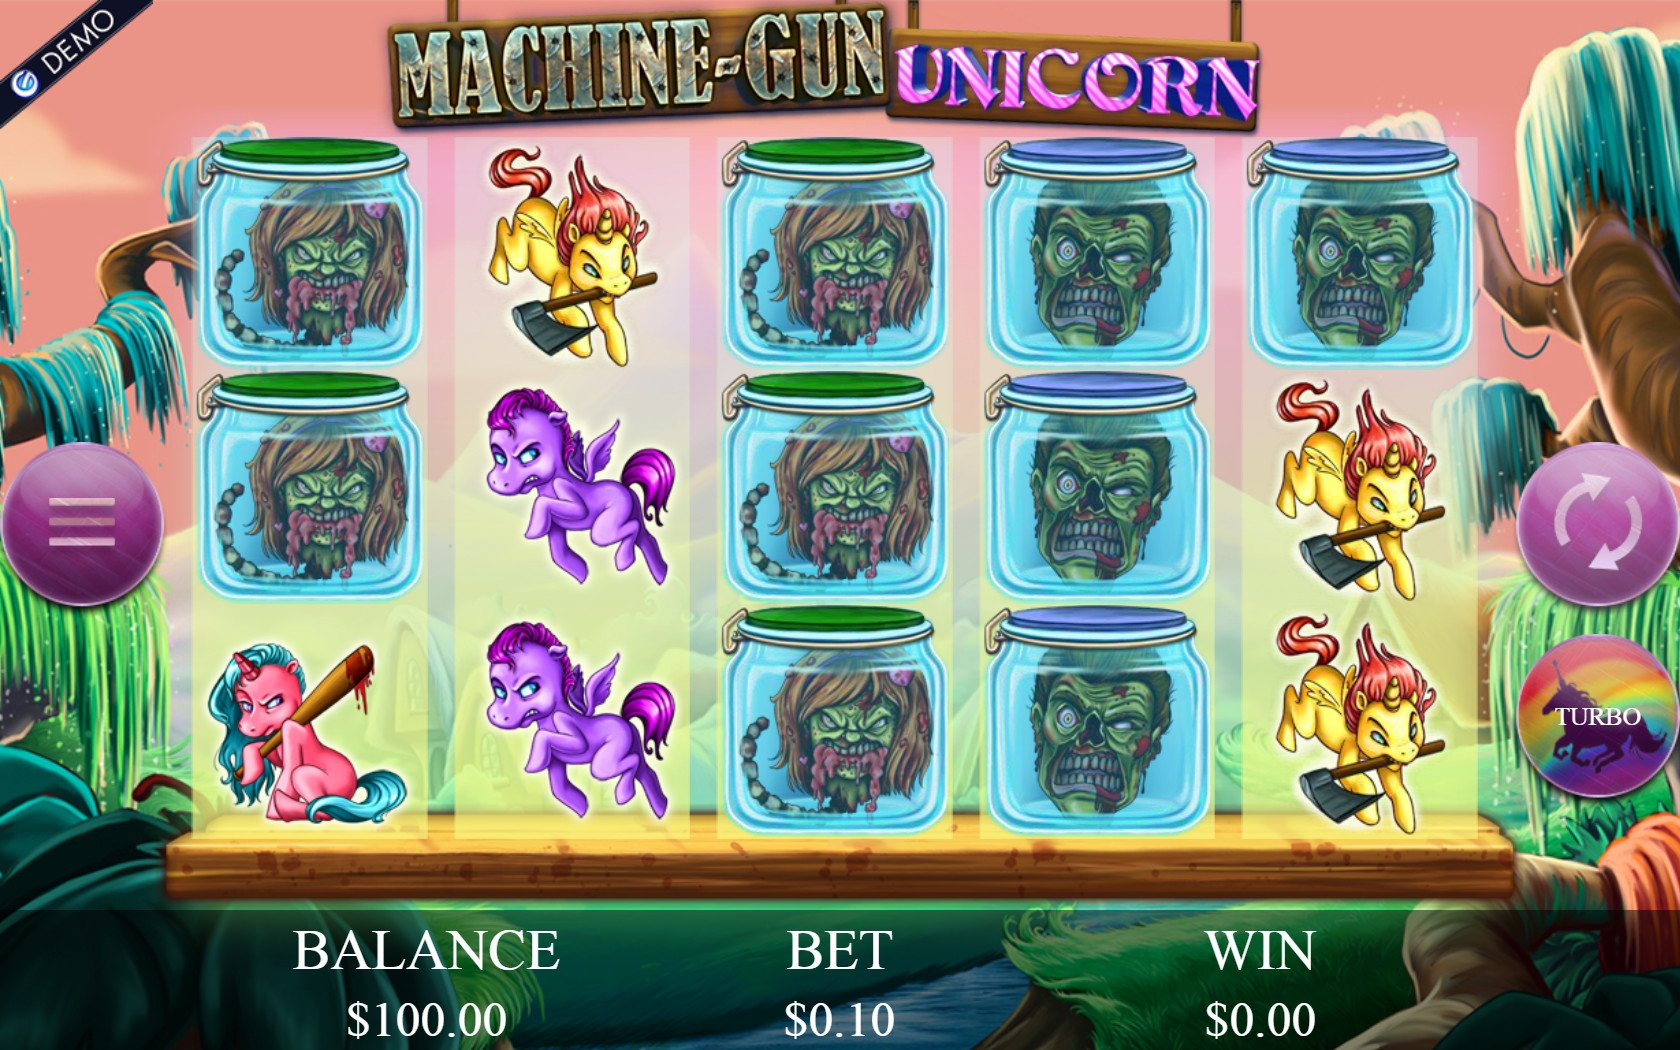 Machine-Gun Unicorn (Machine-Gun Unicorn) from category Slots